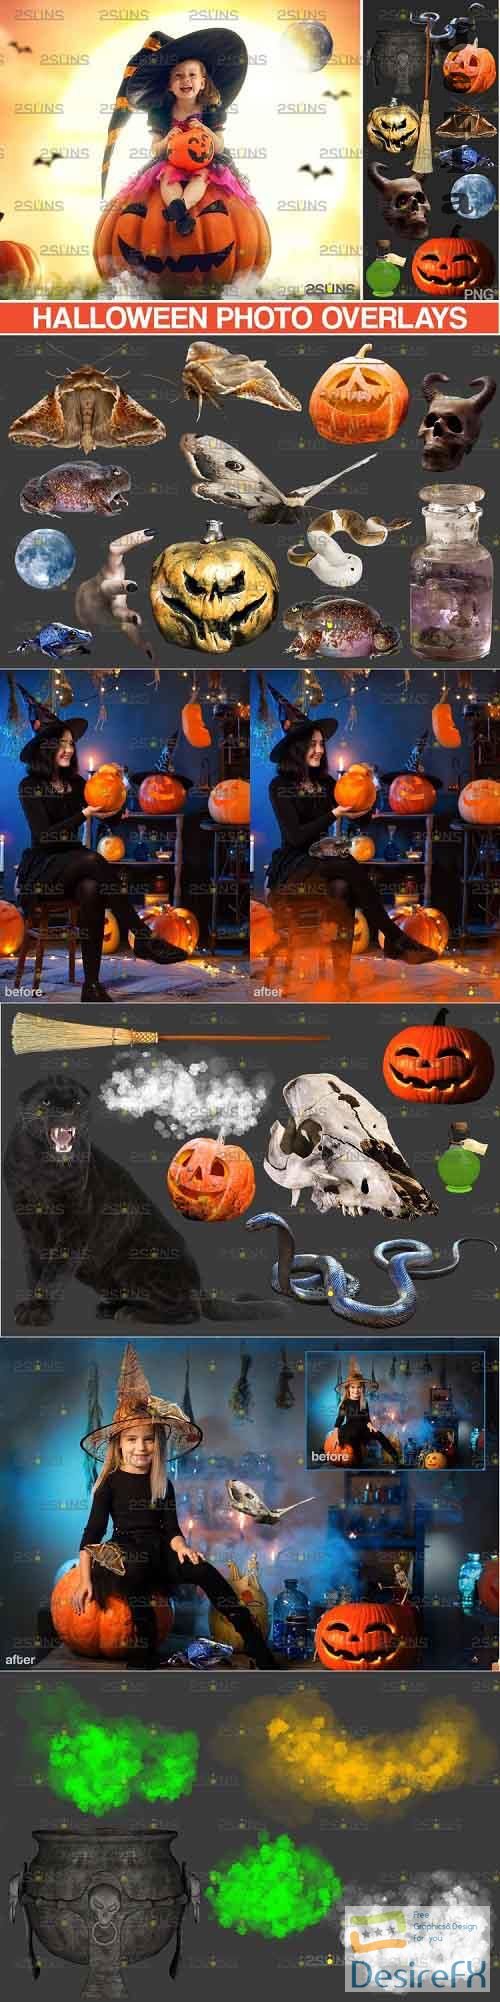 Photoshop overlay smoke bomb overlay, pumpkin overlays - 981851